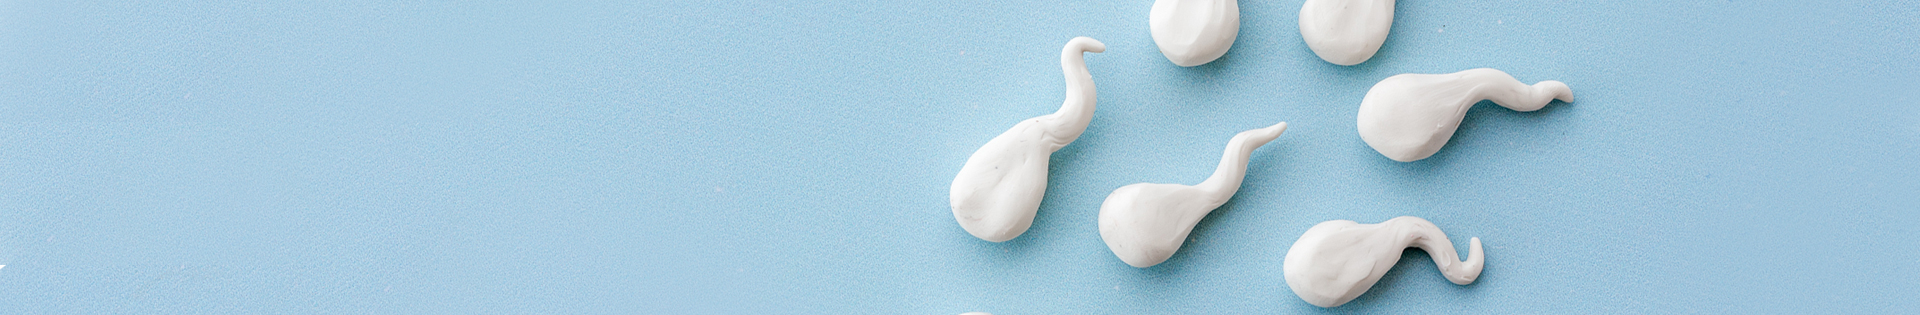 Doação de esperma: quem pode doar e como é feita?